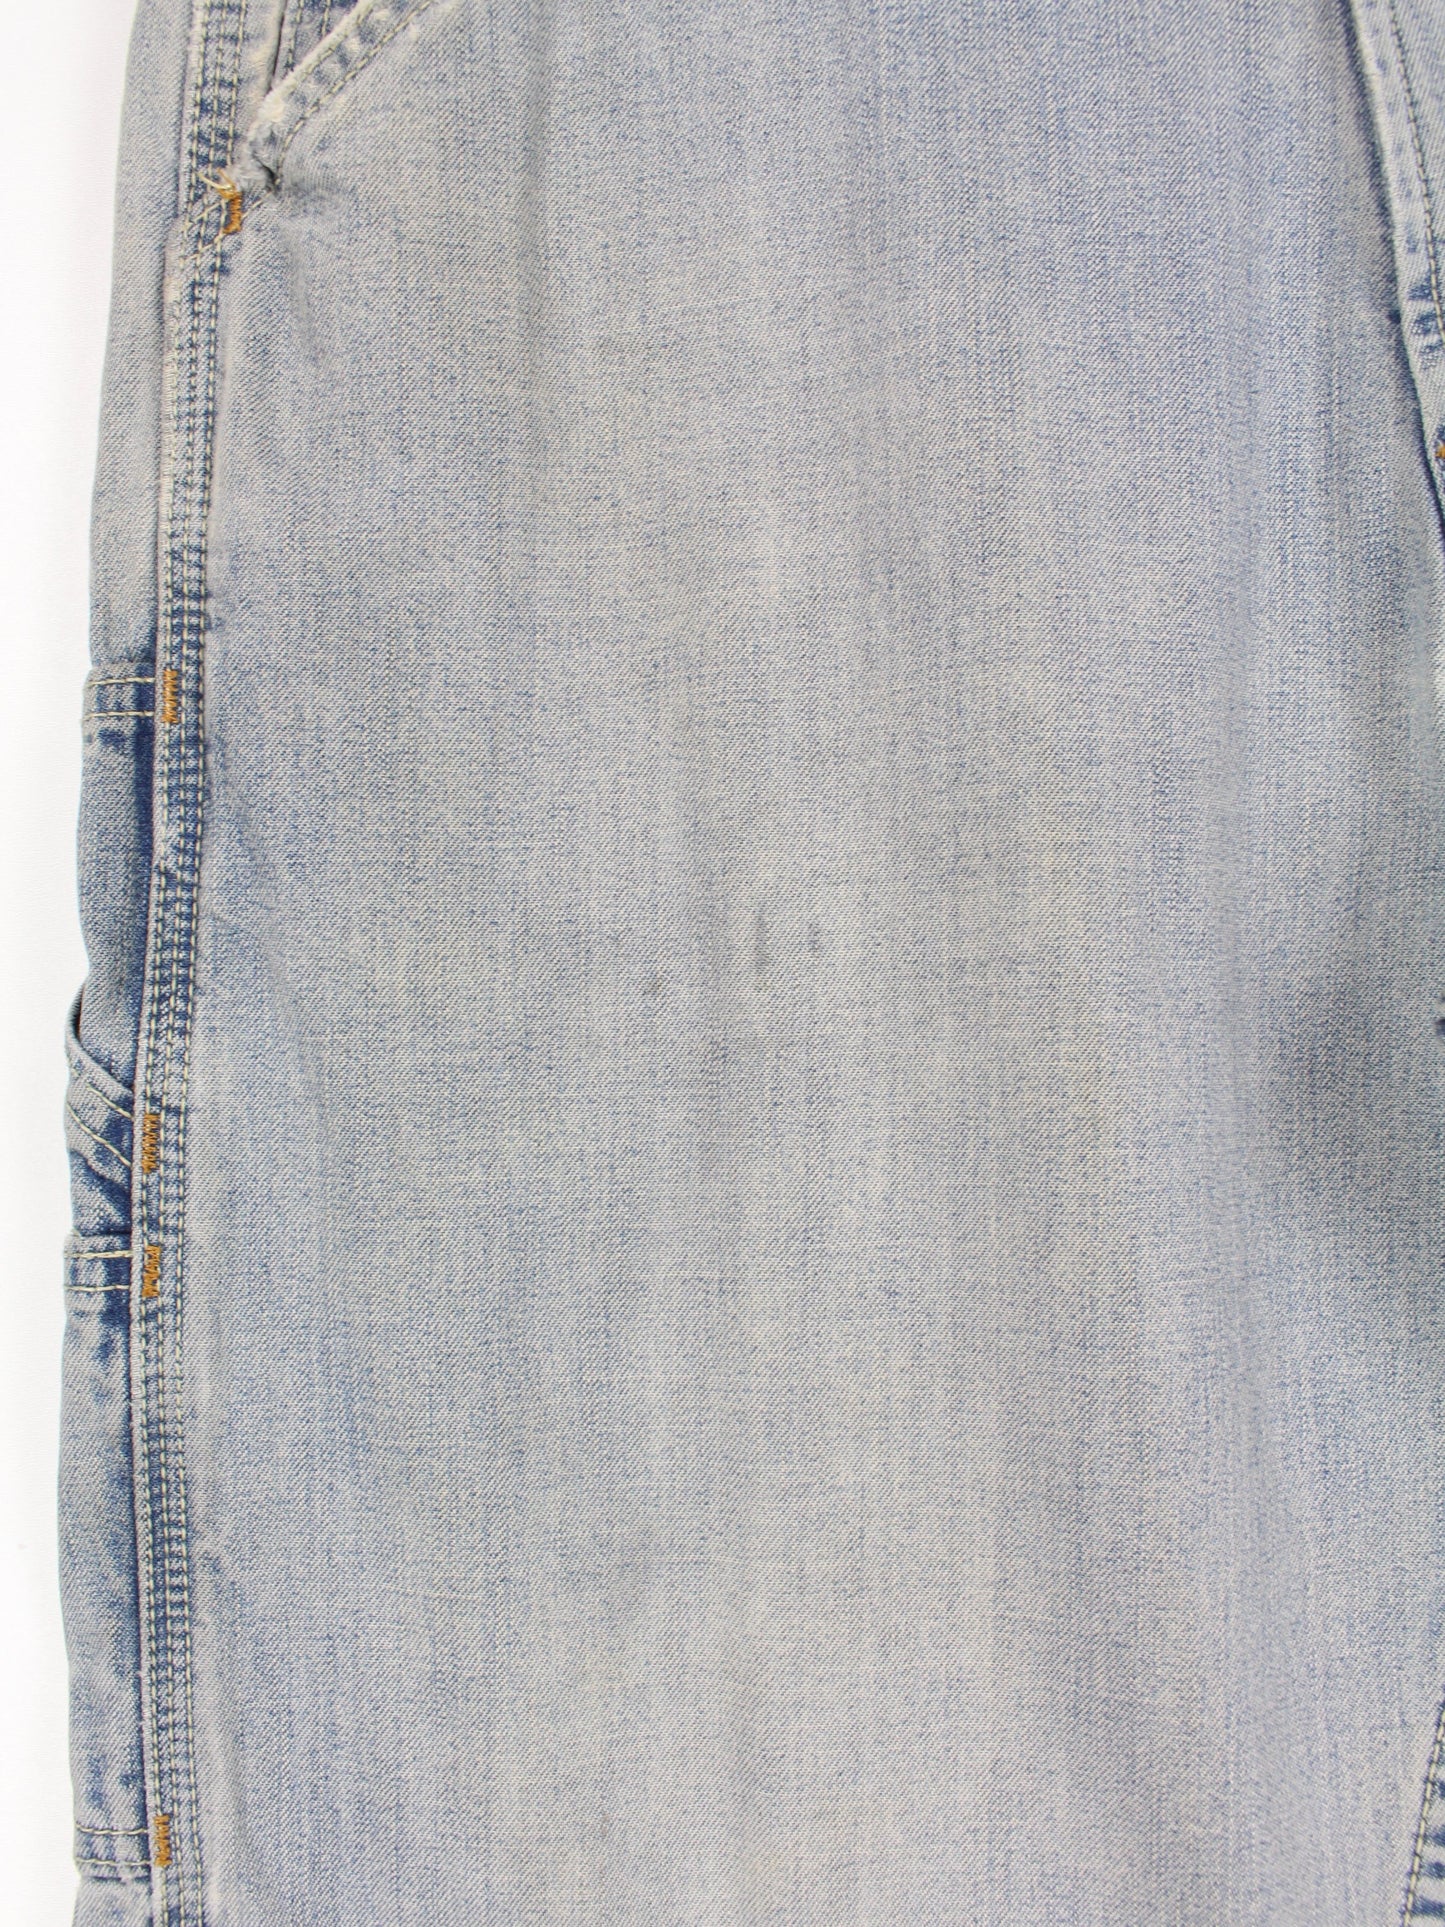 Levis Carpenter Loose Straight Jeans Blau W32 L30